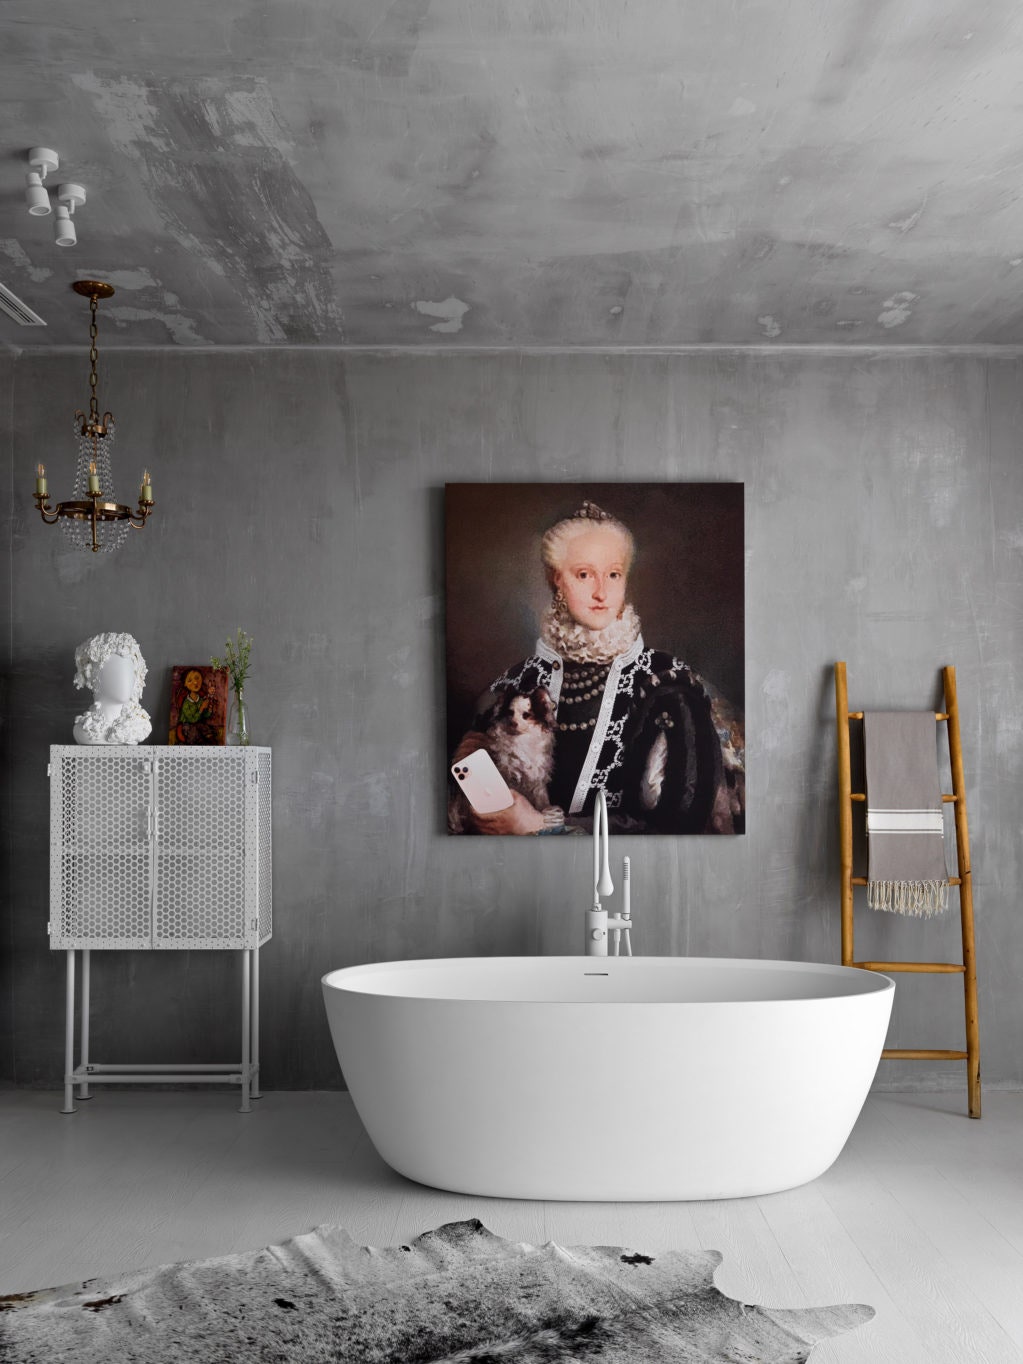 Ванная комната по проекту Анны Эрман. Ванна Palermo NTbathroom белая тумба и шкаф из металла сделаны Анной Эрман она же...